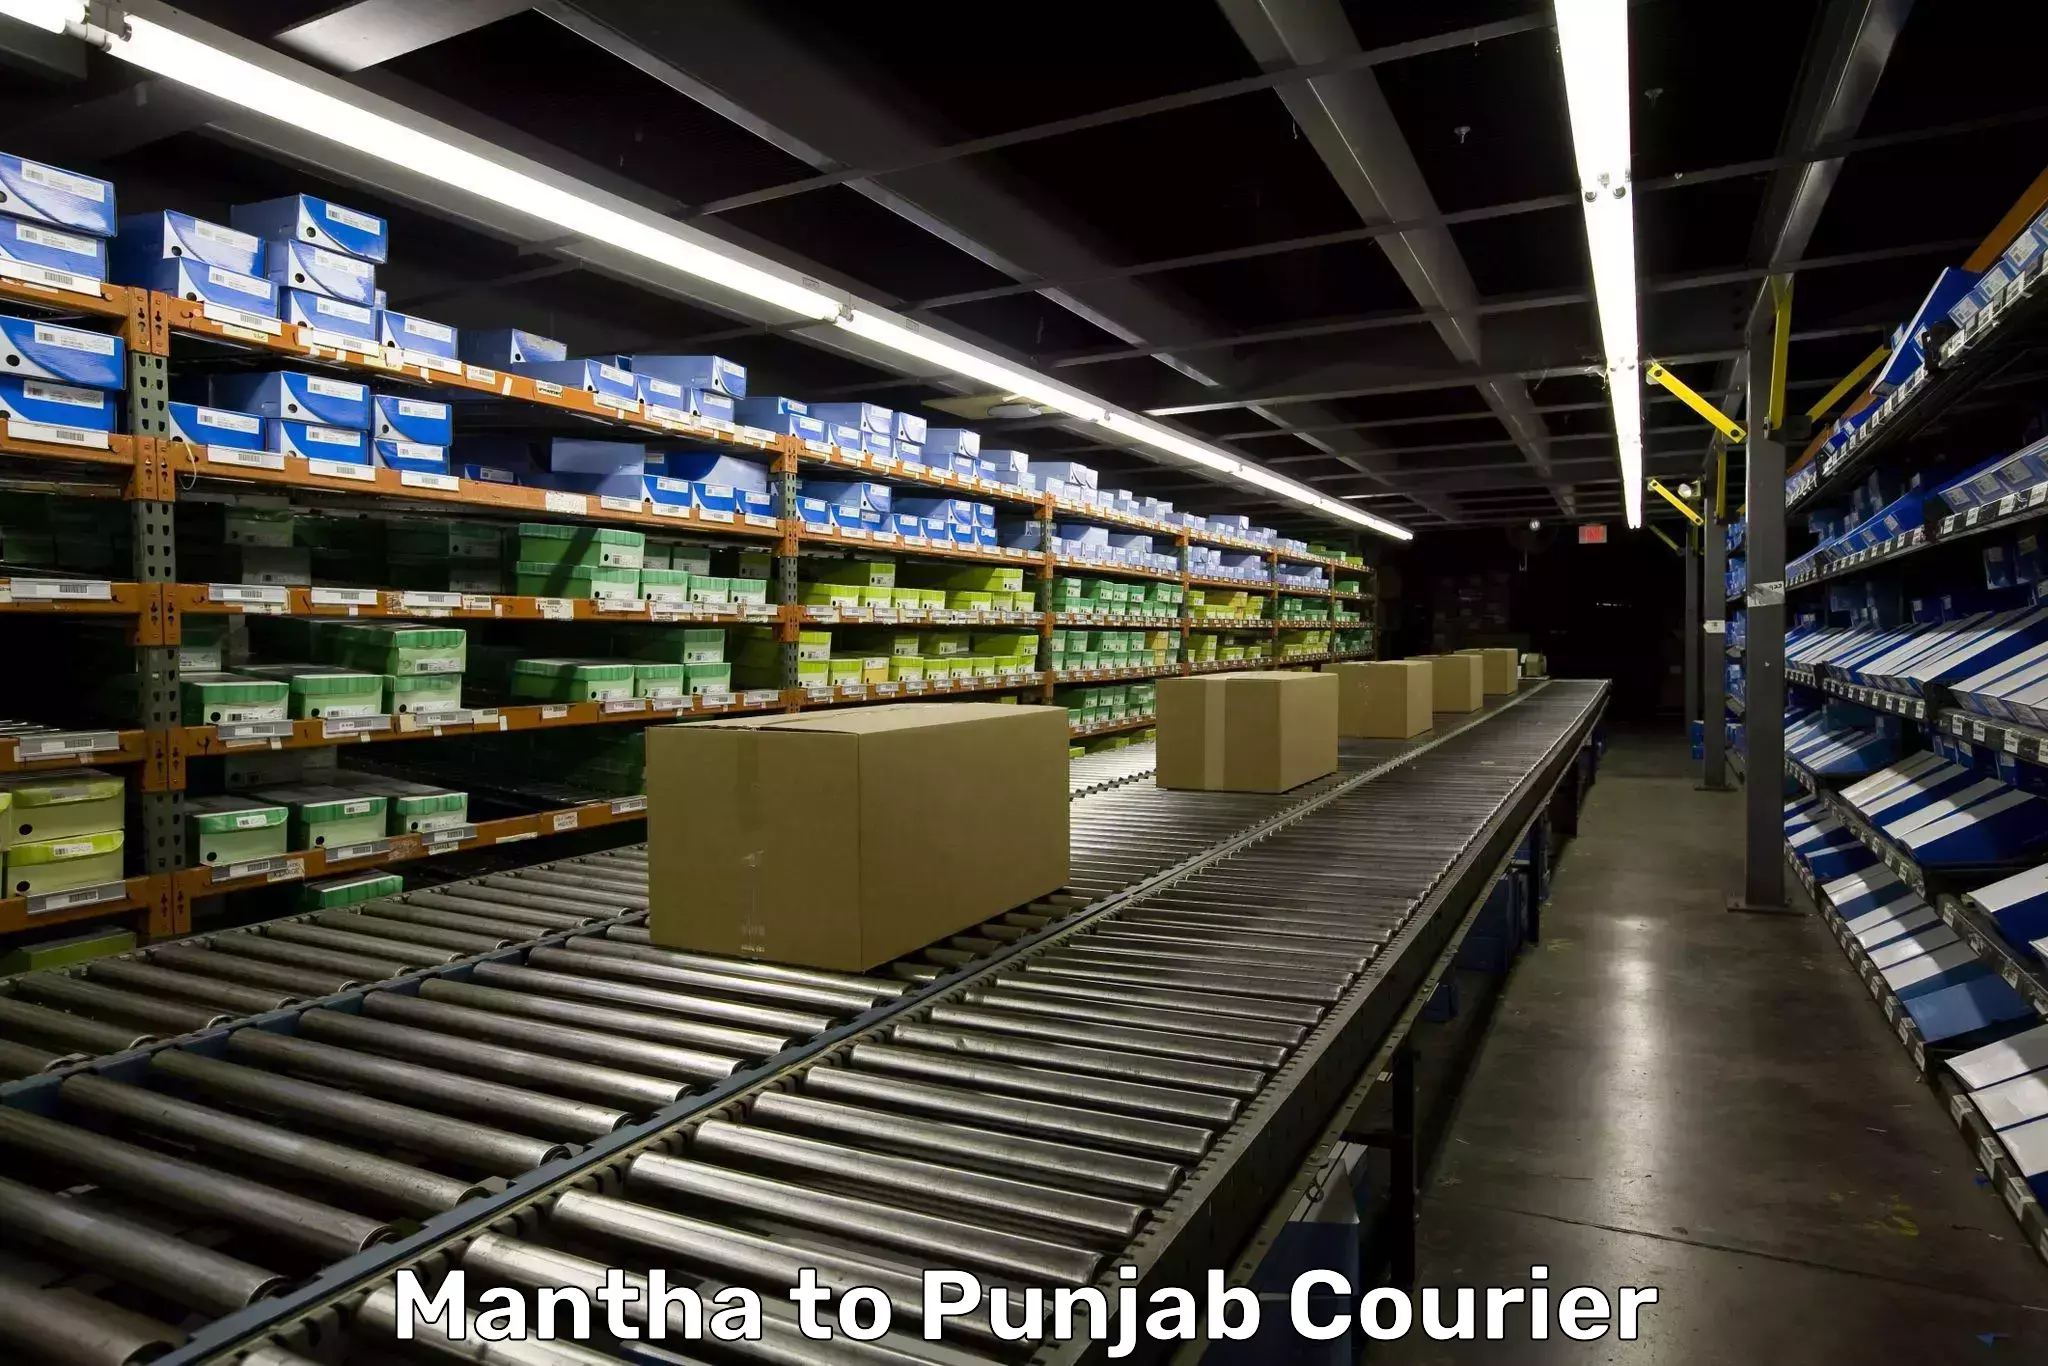 Door-to-door baggage service Mantha to Punjab